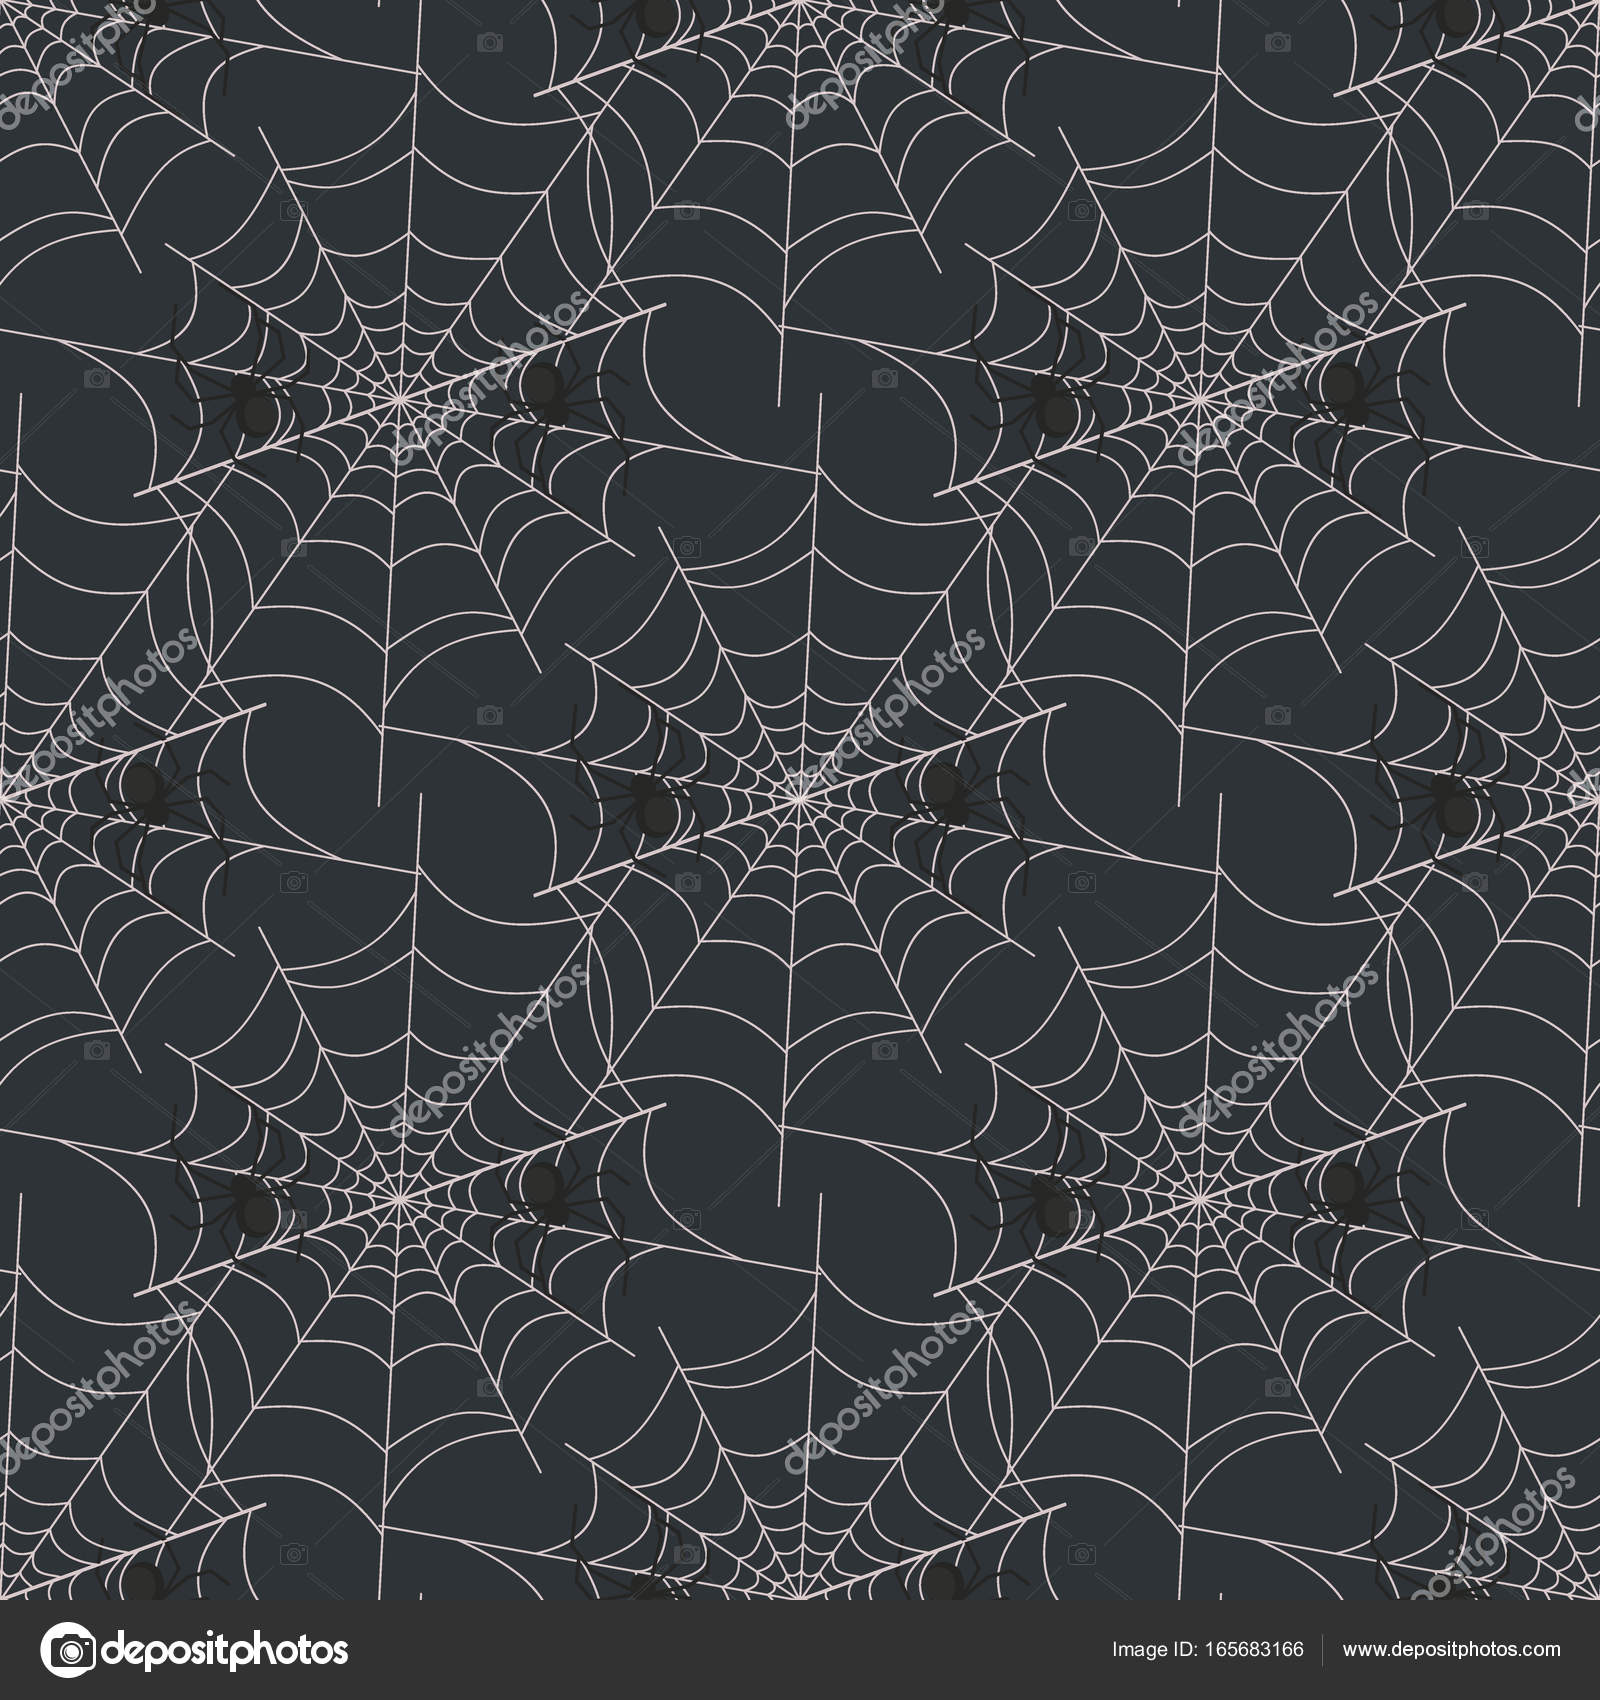 Update more than 75 spider web wallpaper latest - songngunhatanh.edu.vn